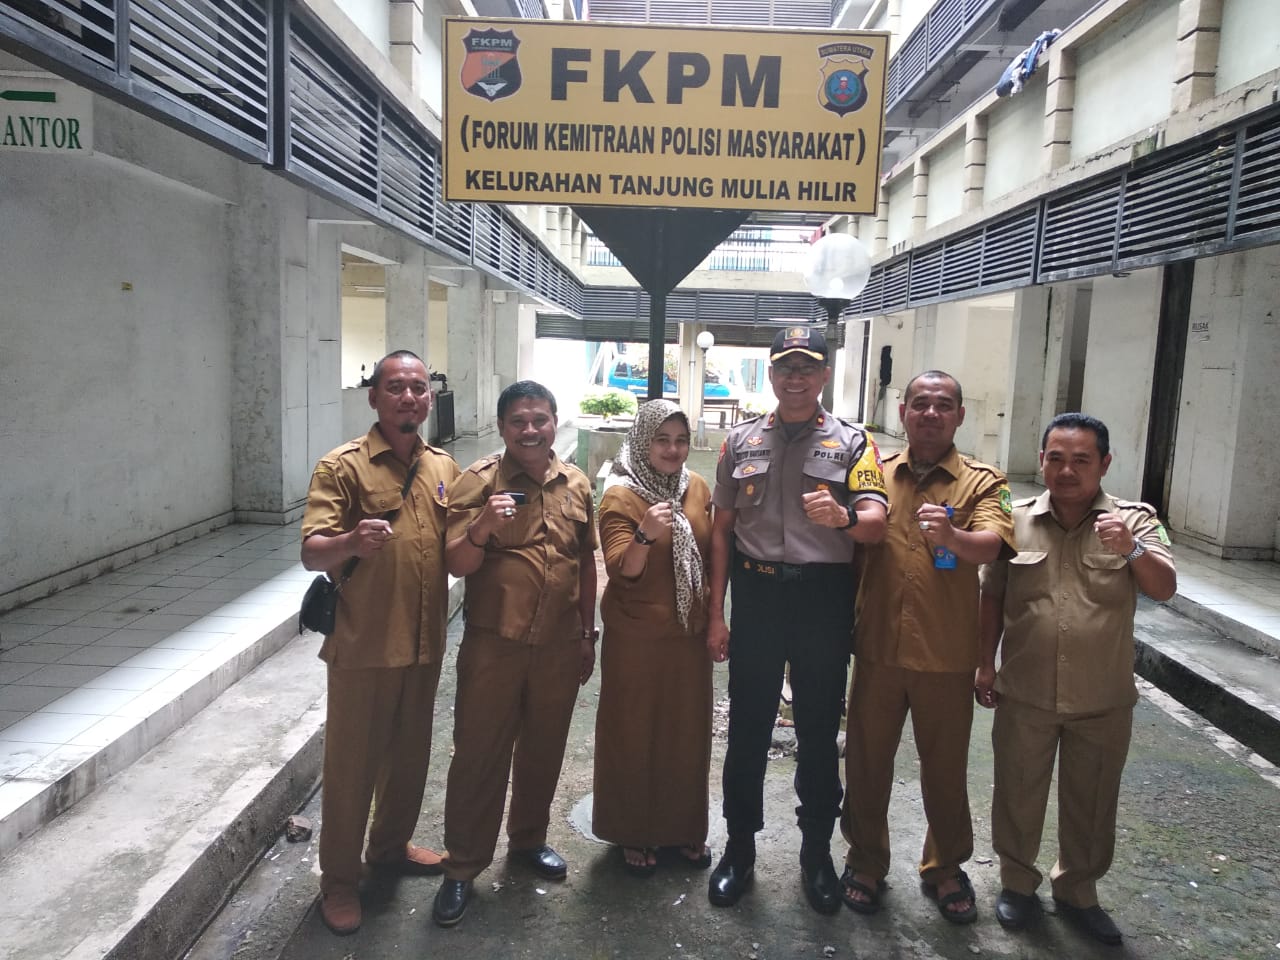 Kompol Rosyid Hartanto Resmikan Forum Kemitraan Polisi Masyarakat (FKPM) di Rusunawa Tanjung Mulia